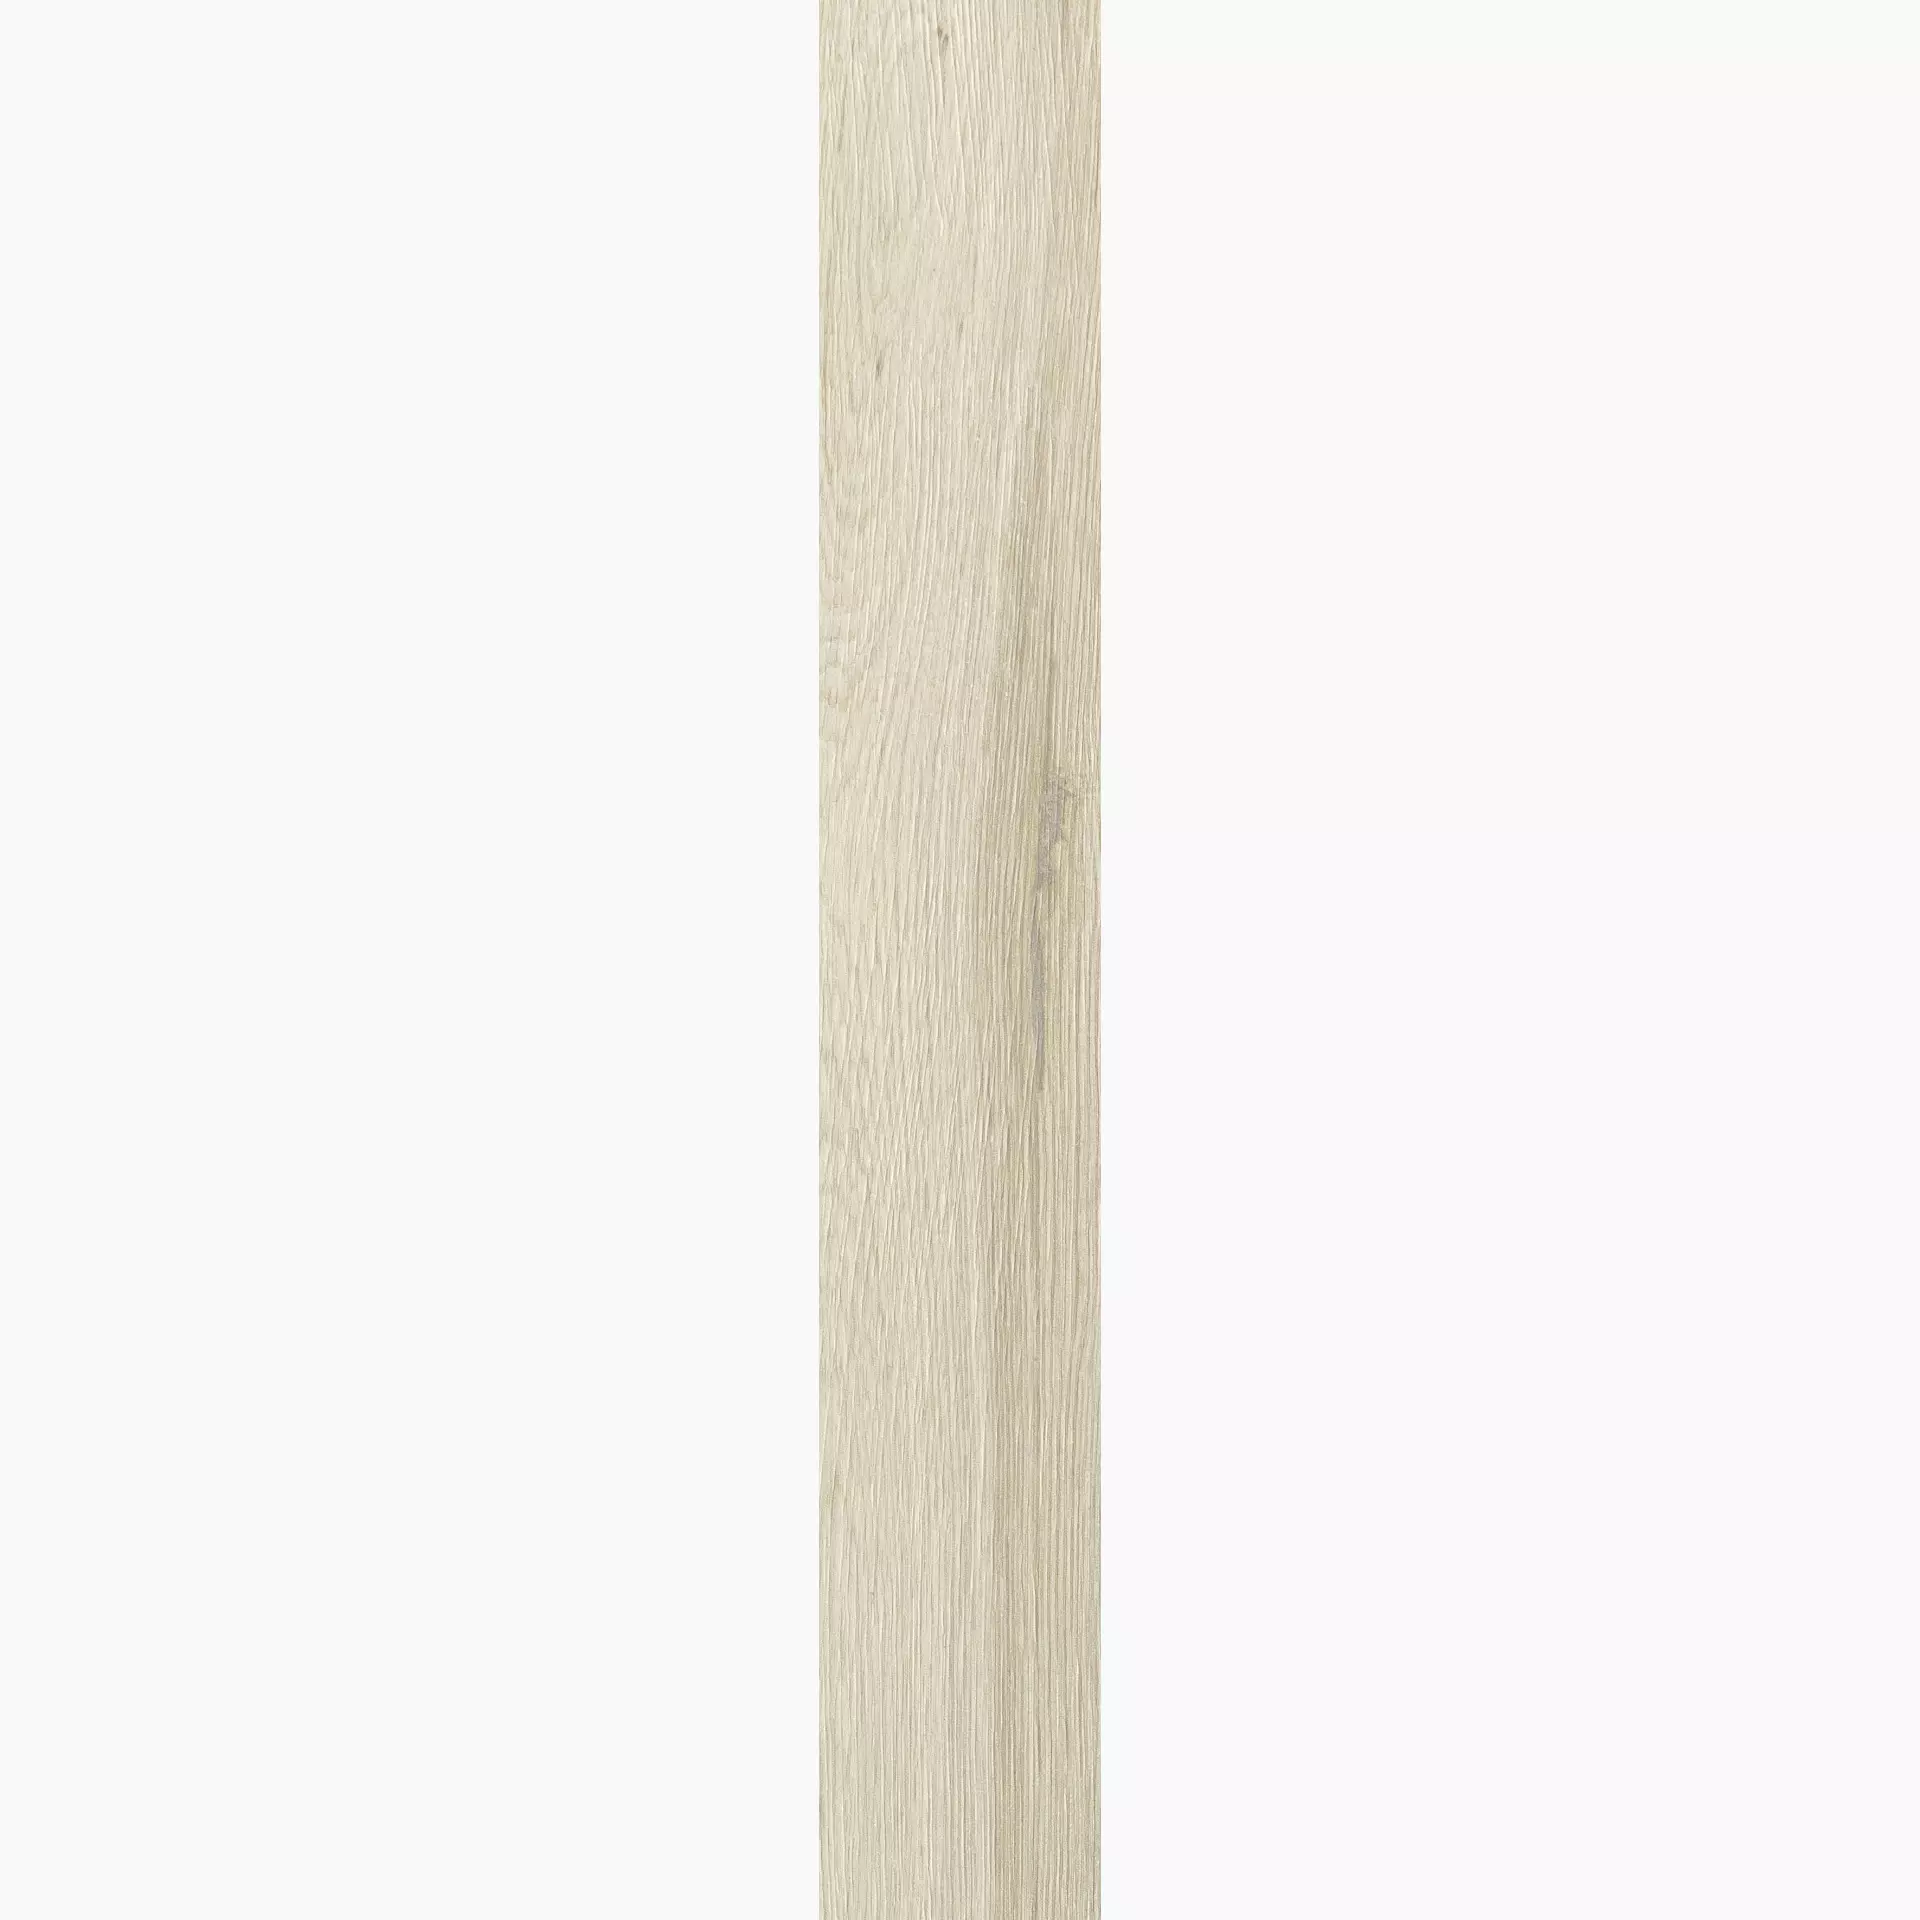 Florim Planches De Rex Amande Naturale – Matt 755693 26,5x180cm rectified 9mm